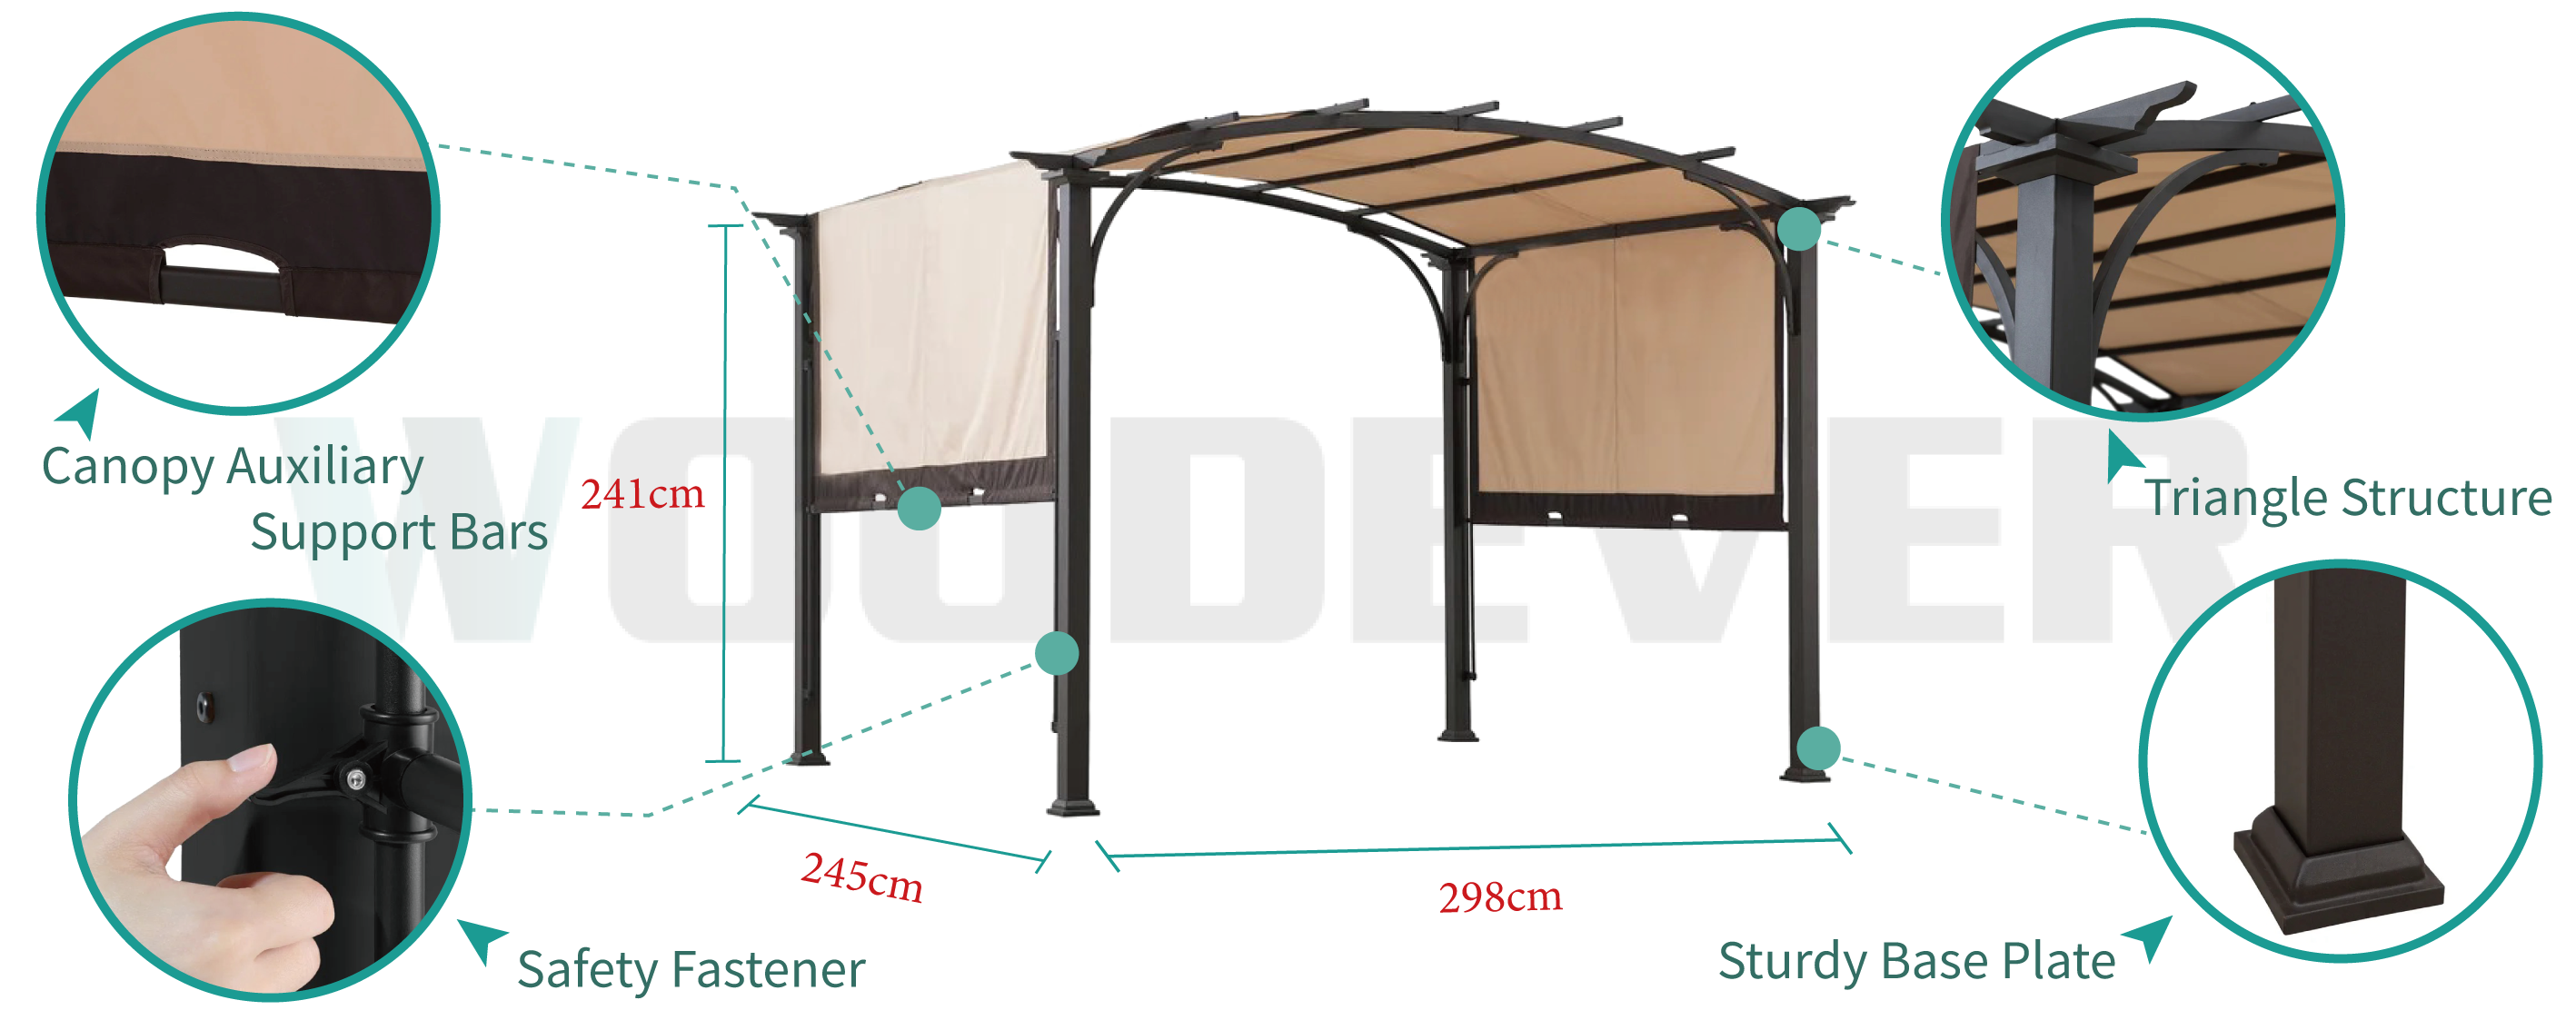 WOODEVERの屋外用家具メタルパーゴラは、パーゴラの日陰位置を自由に調整でき、生地を固定するためのセキュリティロックが付いており、安定した構造で組み立てられています。